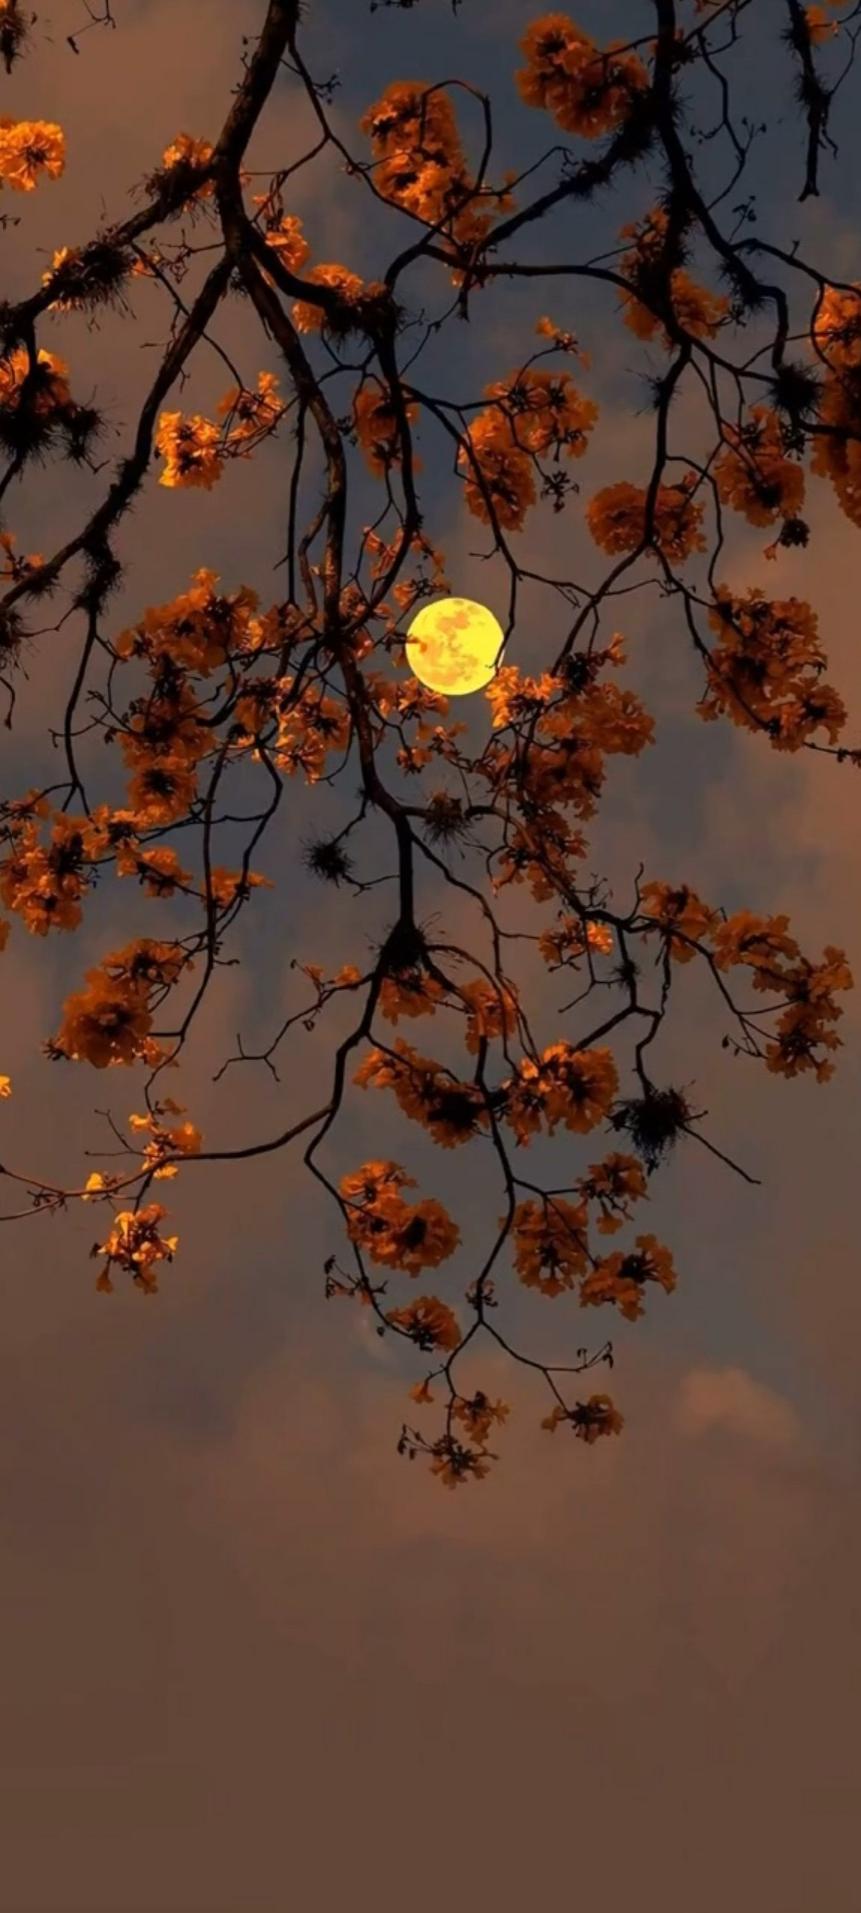 Autumn moon.jpg